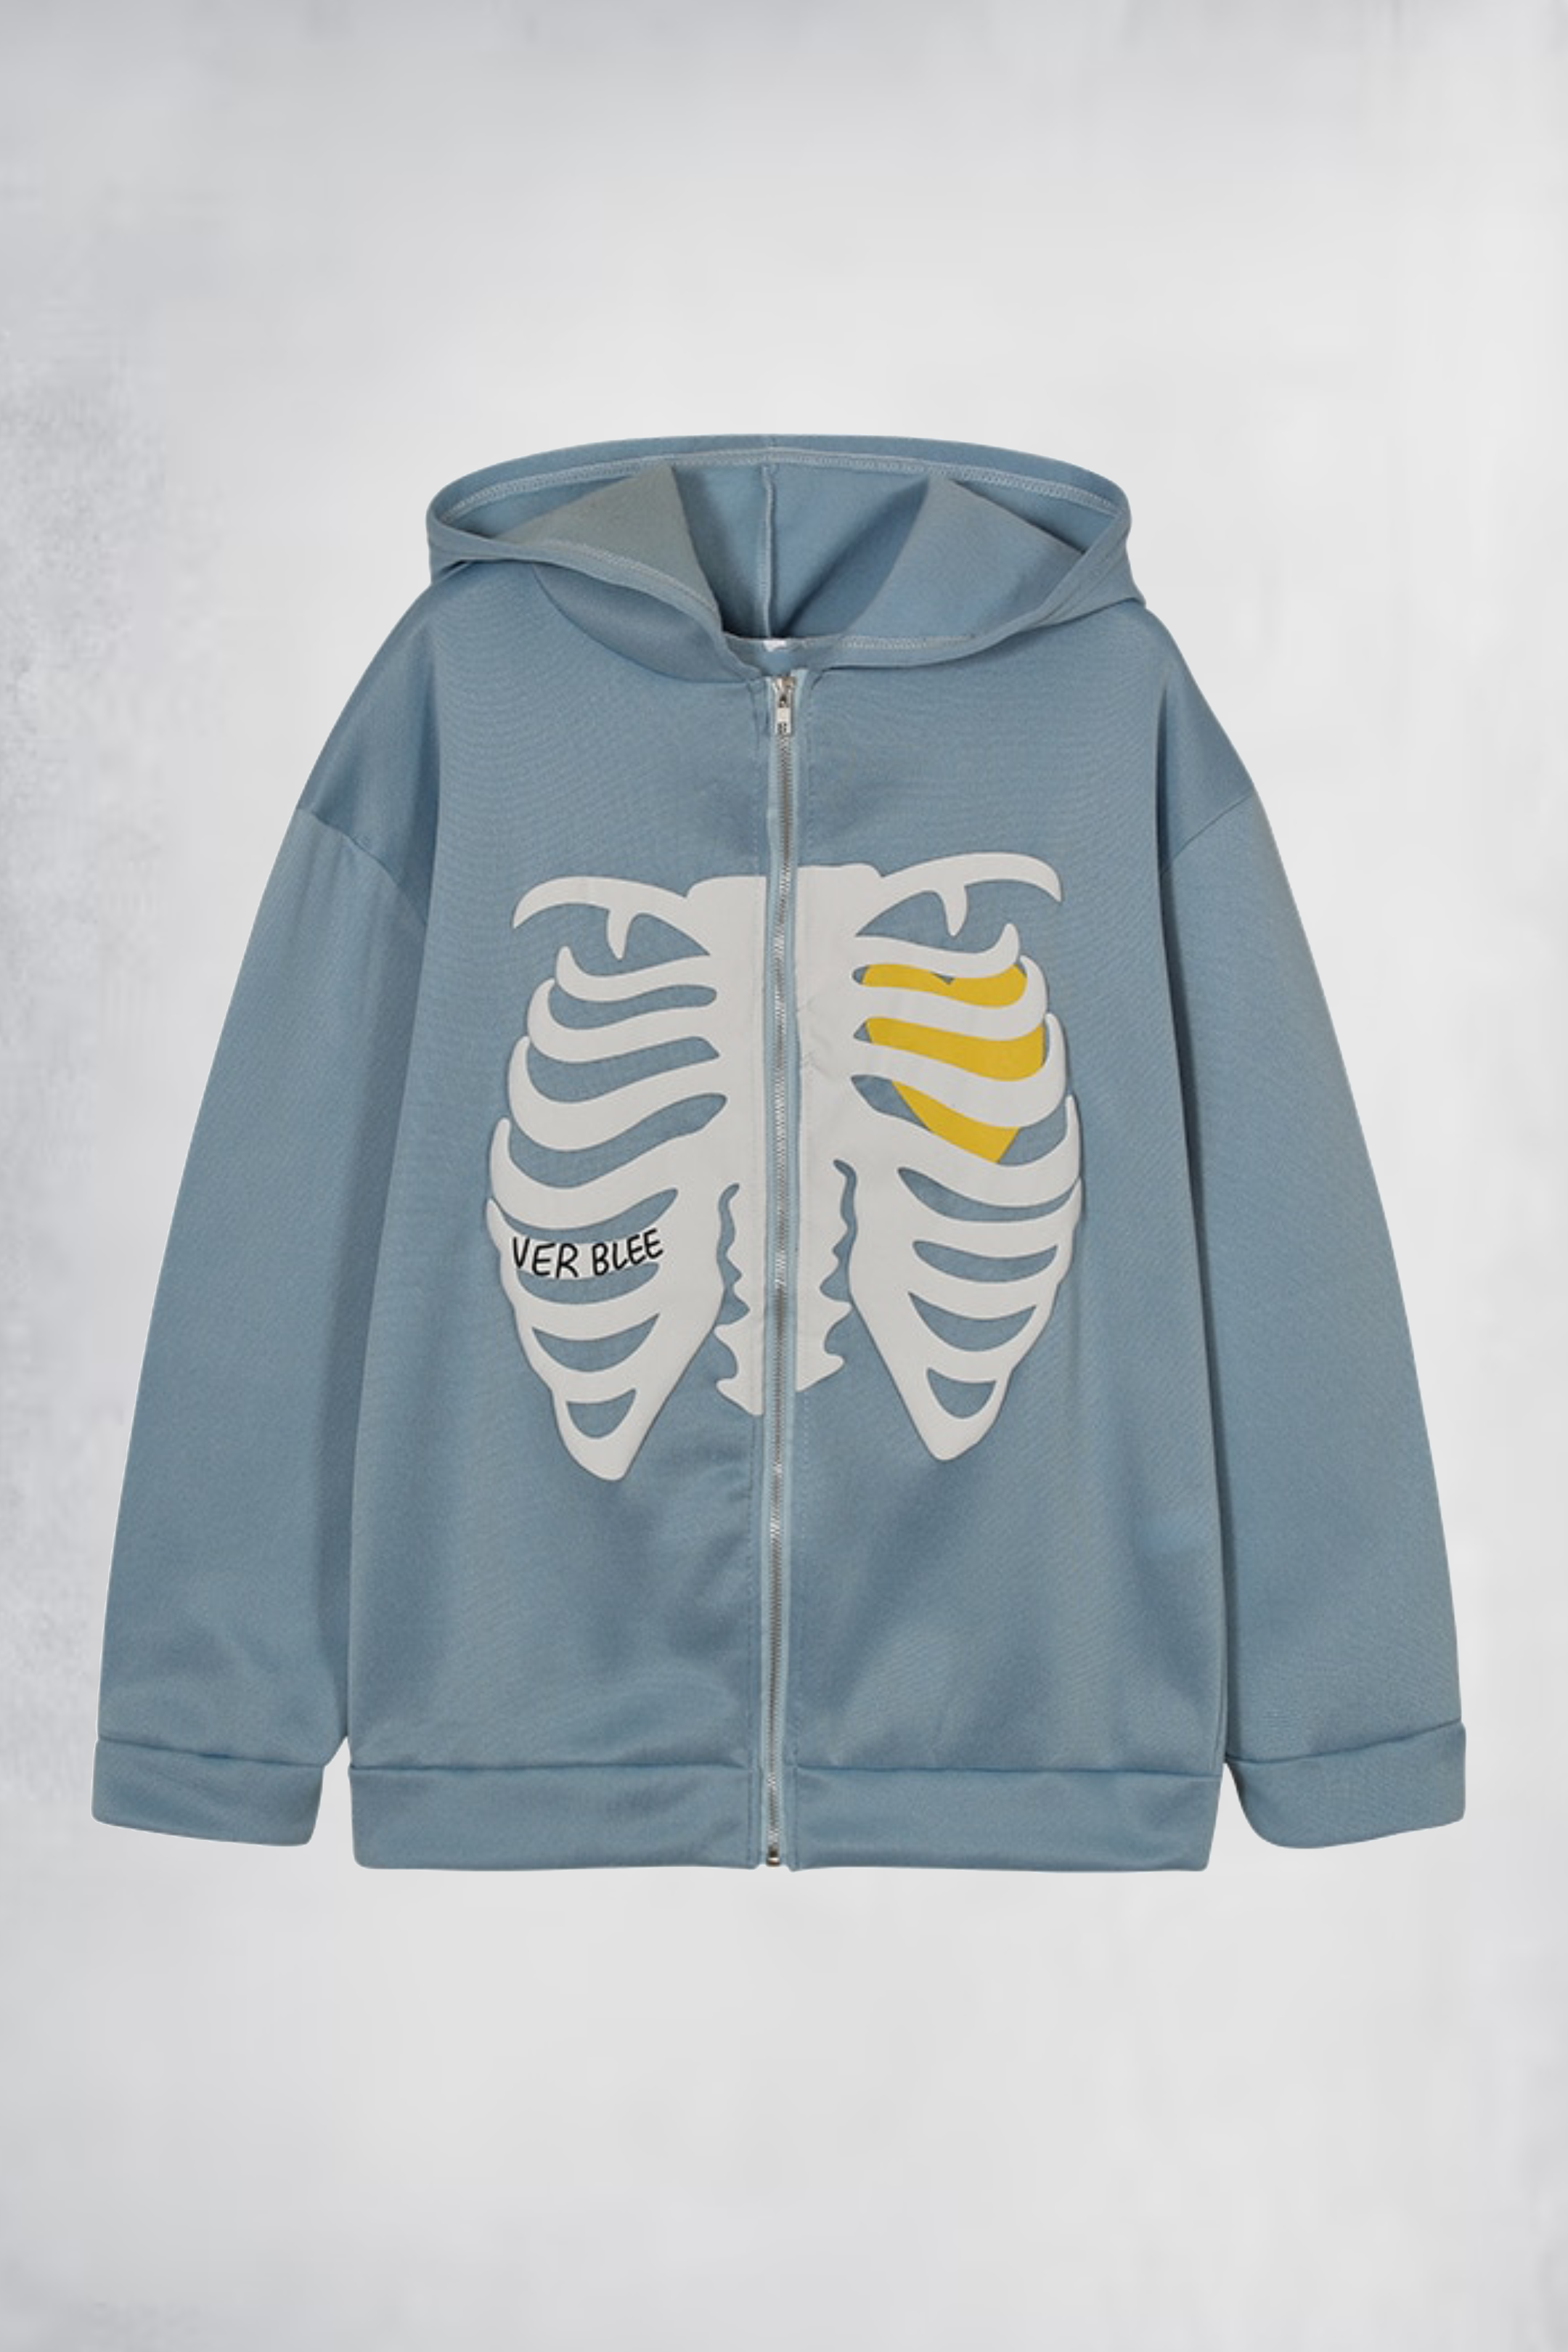 Skeleton Ribs hoodie